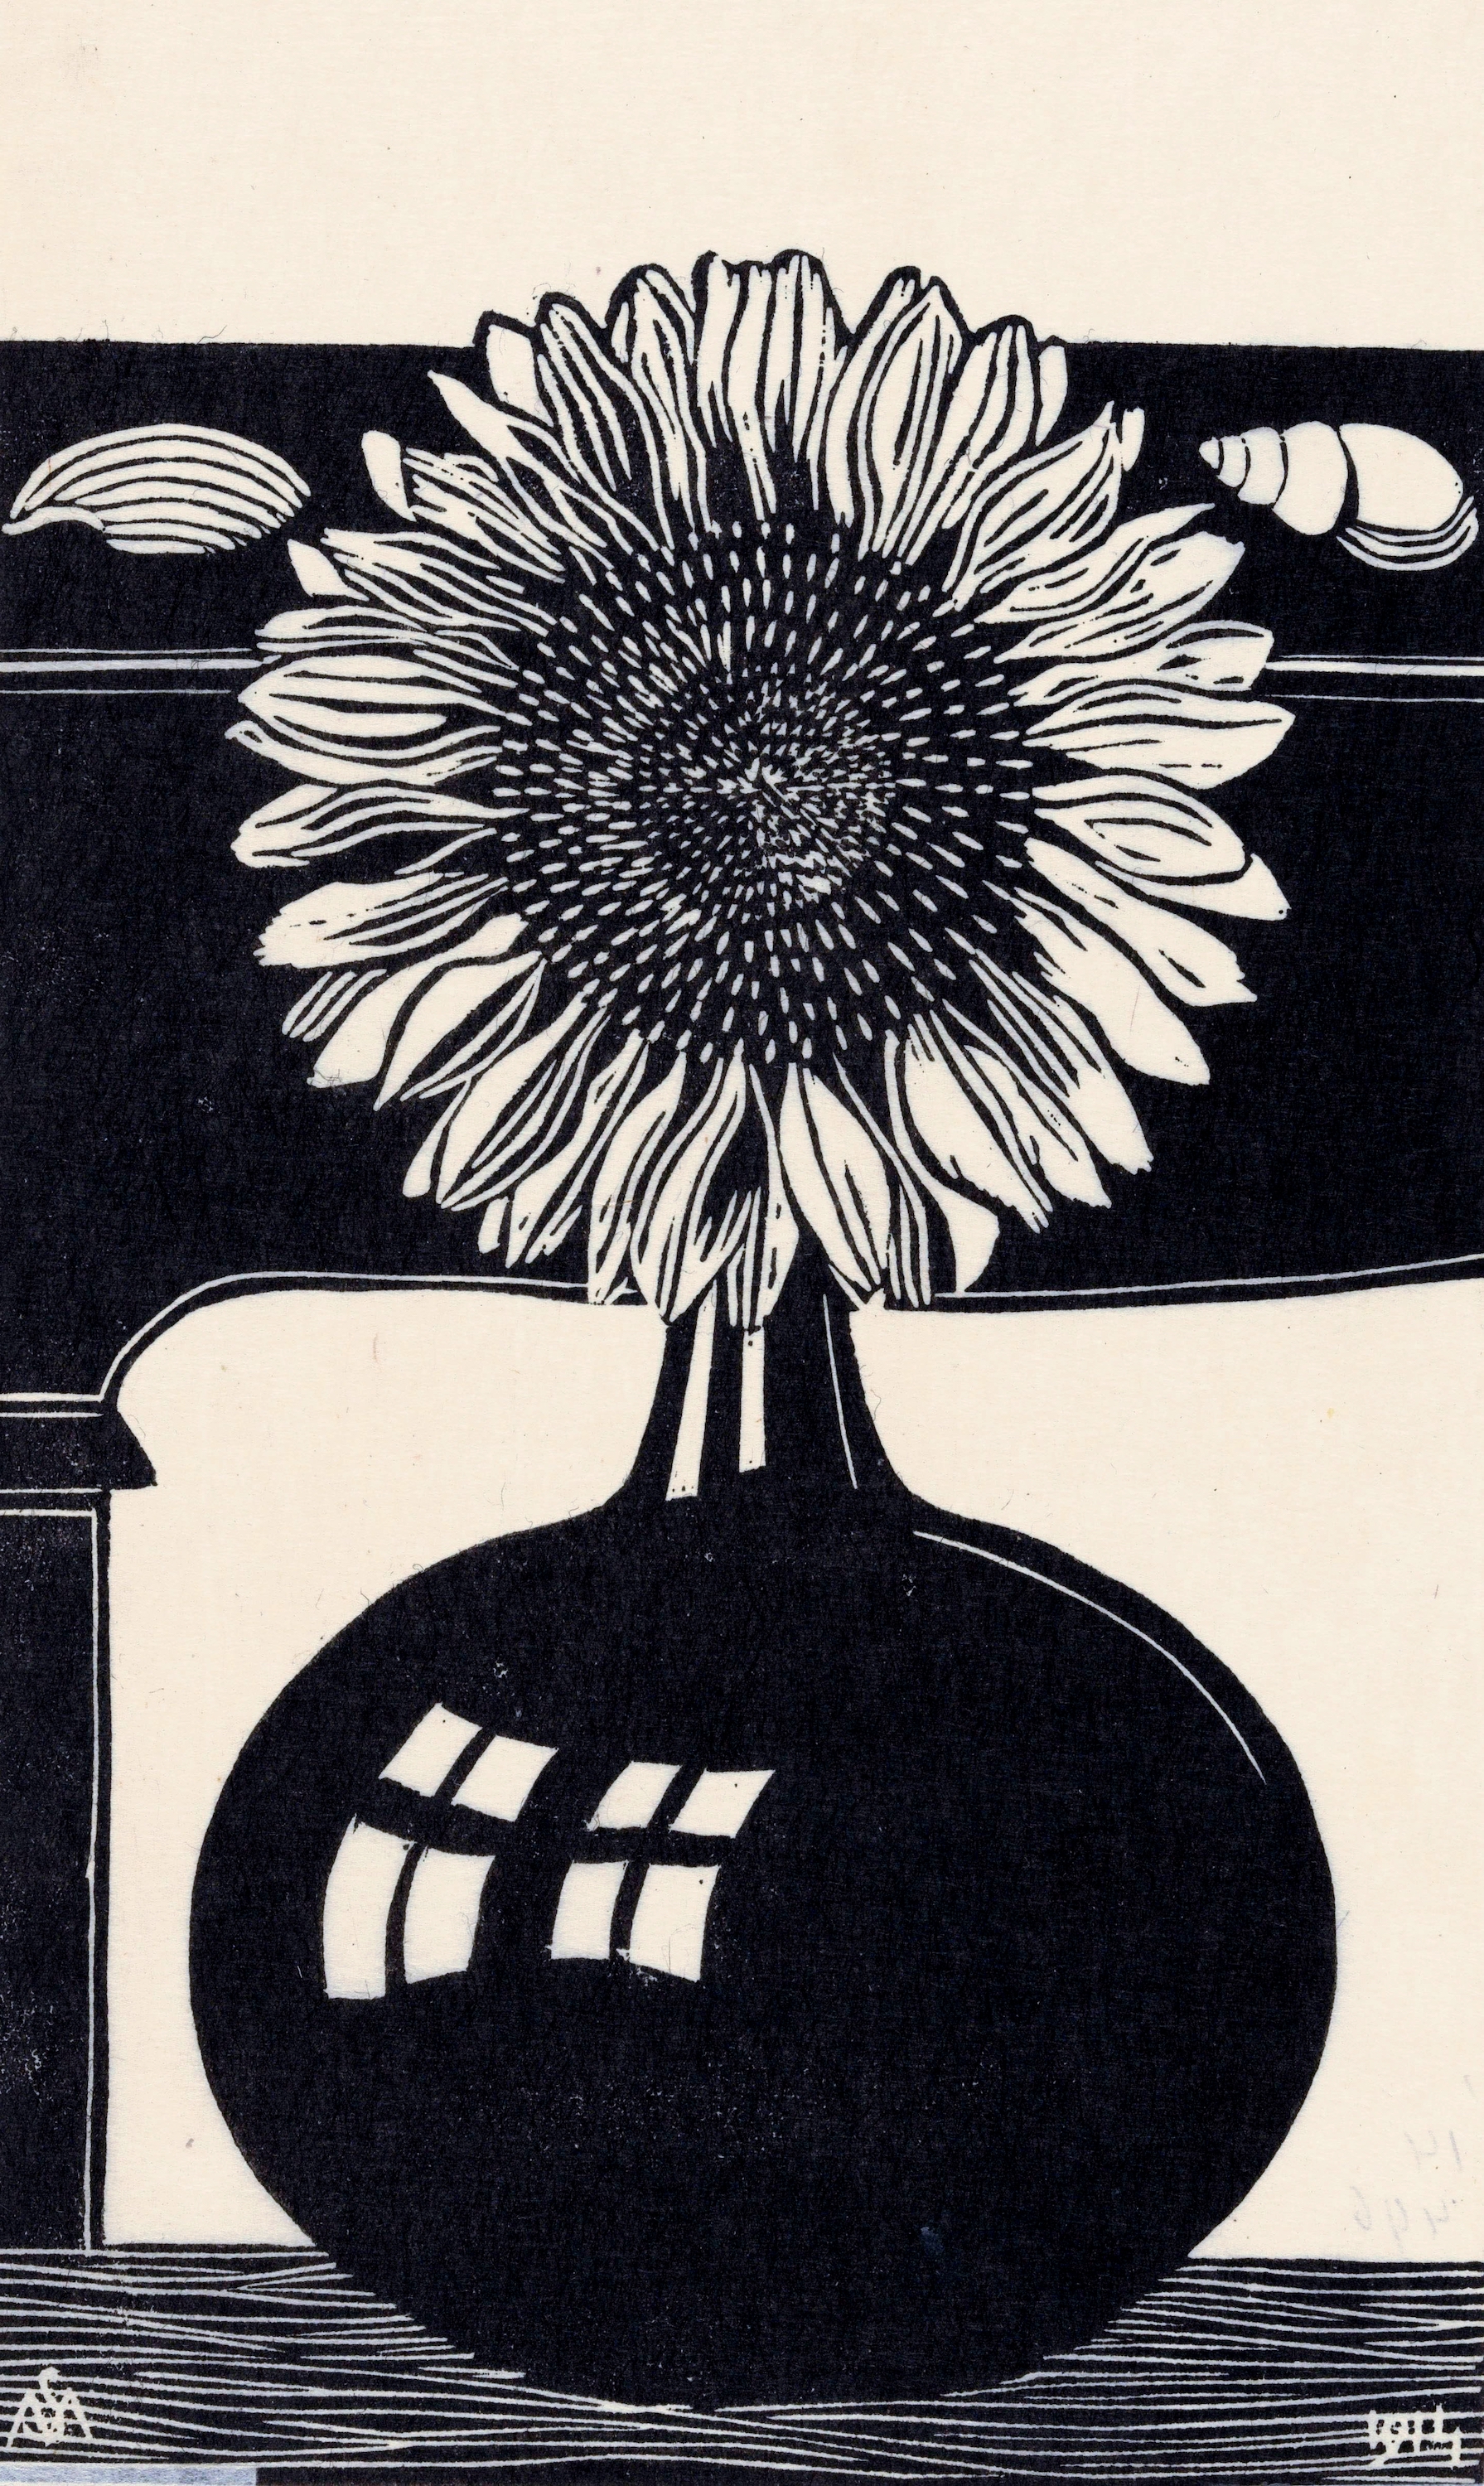 ひまわり by Samuel Jessurun de Mesquita - 1914年 - 29.9 x 19.5 cm 